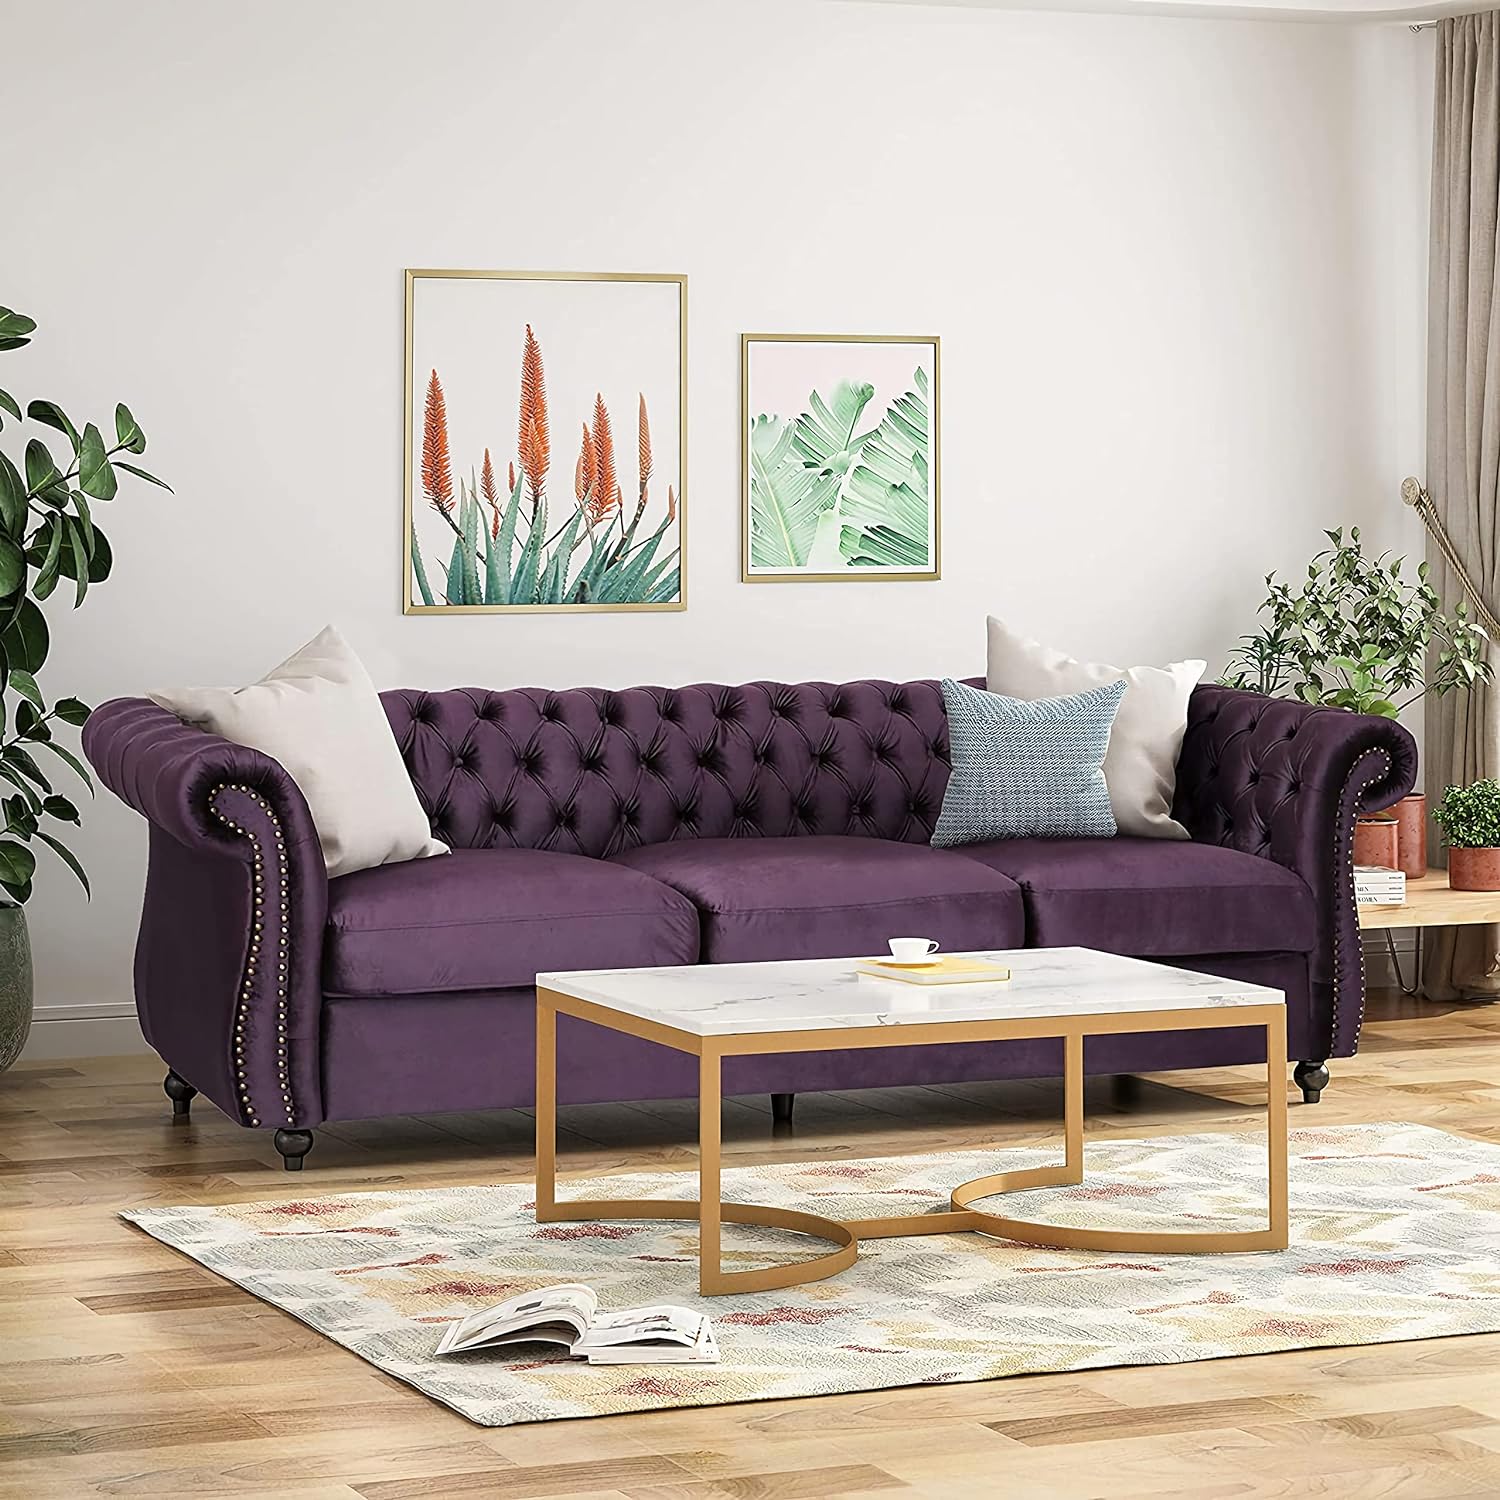 sofa colour